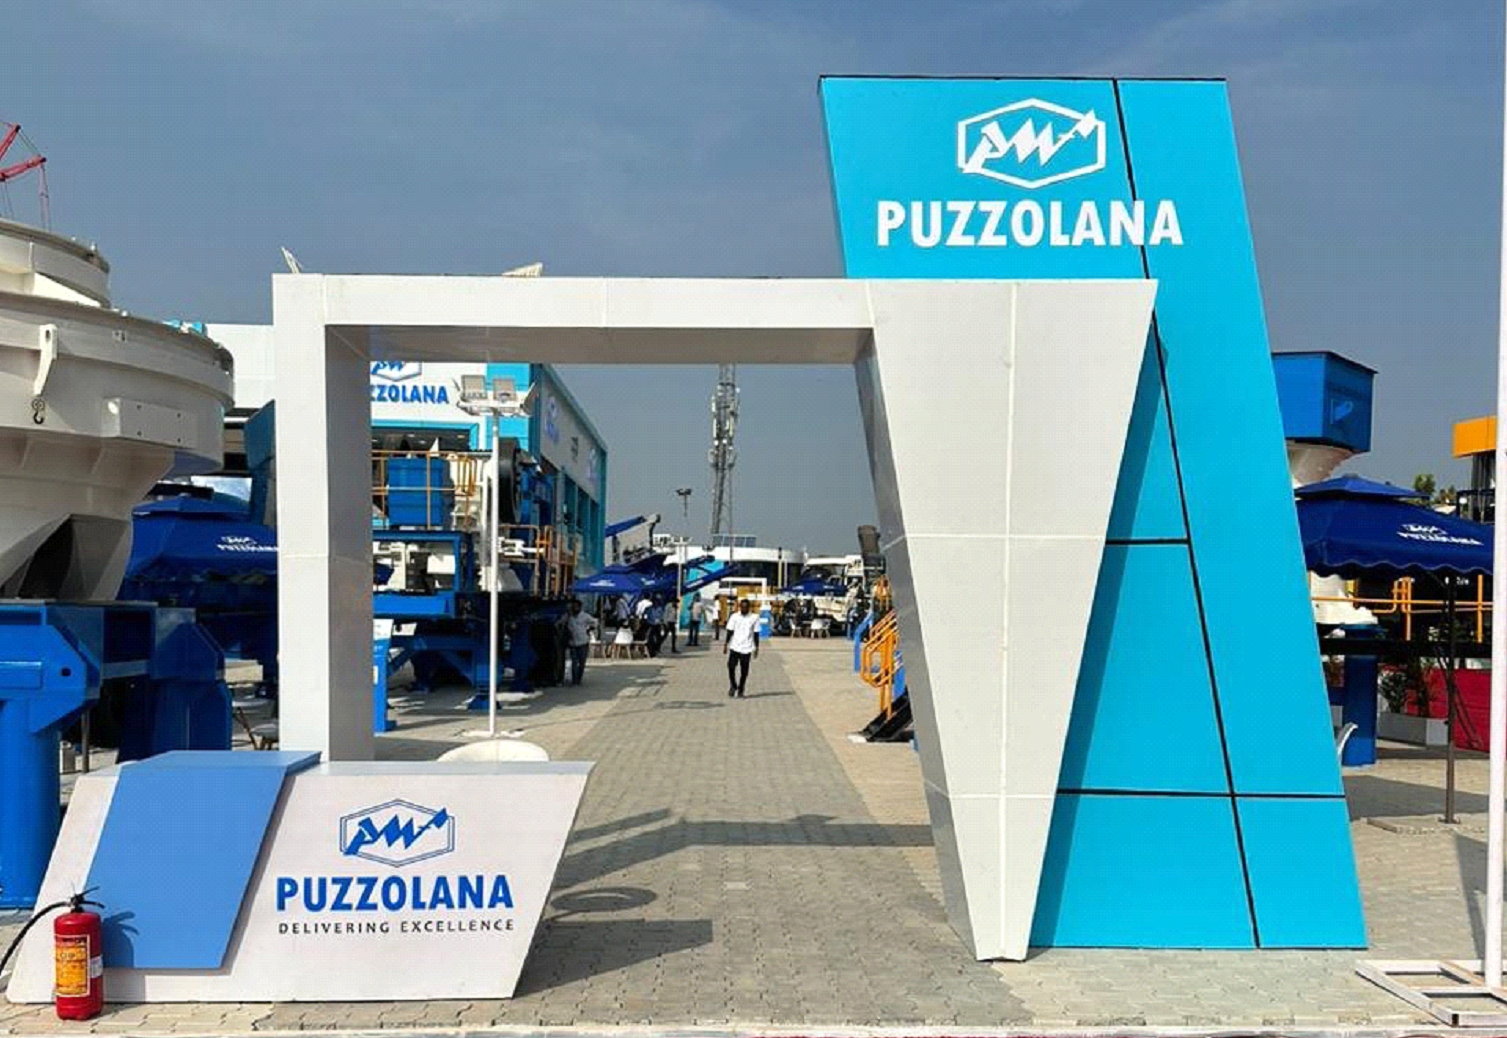 Официальный дистрибьютор бренда Puzzolana в России с радостью приглашает партнеров на грандиозную презентацию дробильно-сортировочного оборудования бренда PUZZOLANA.